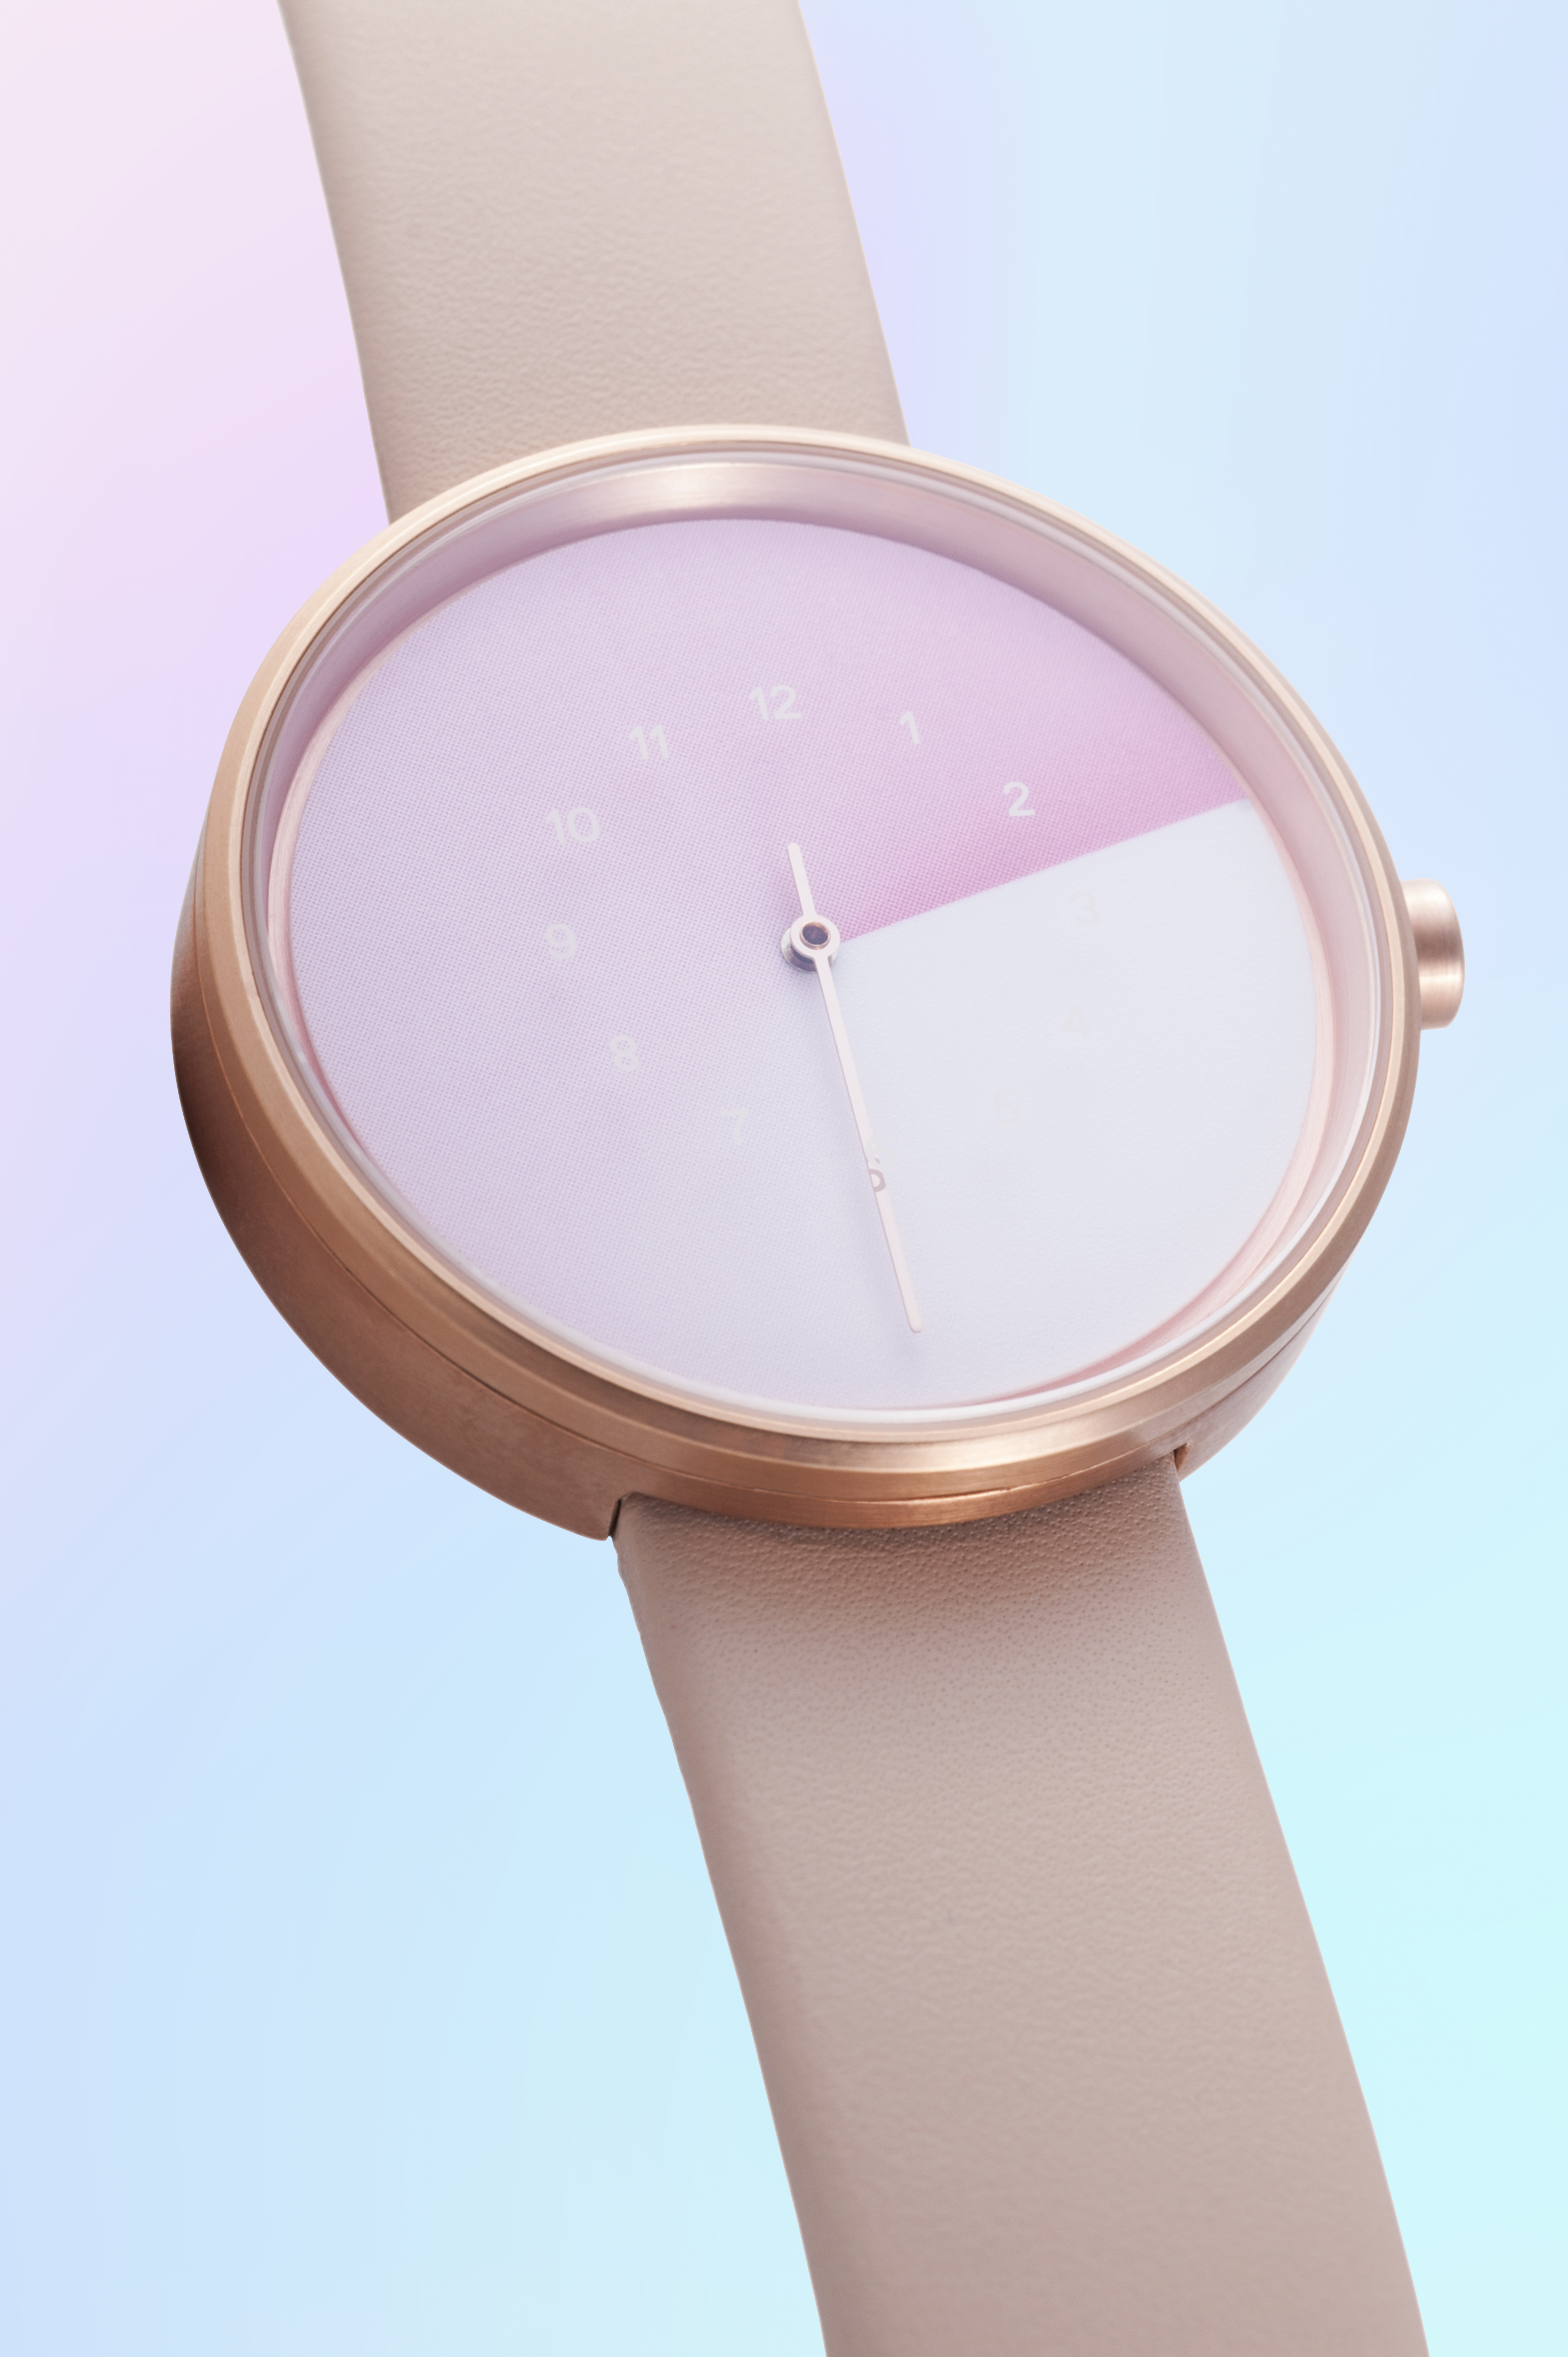 売り日本Hidden Time Watch /ヒドゥンタイム ウォッチ 腕時計